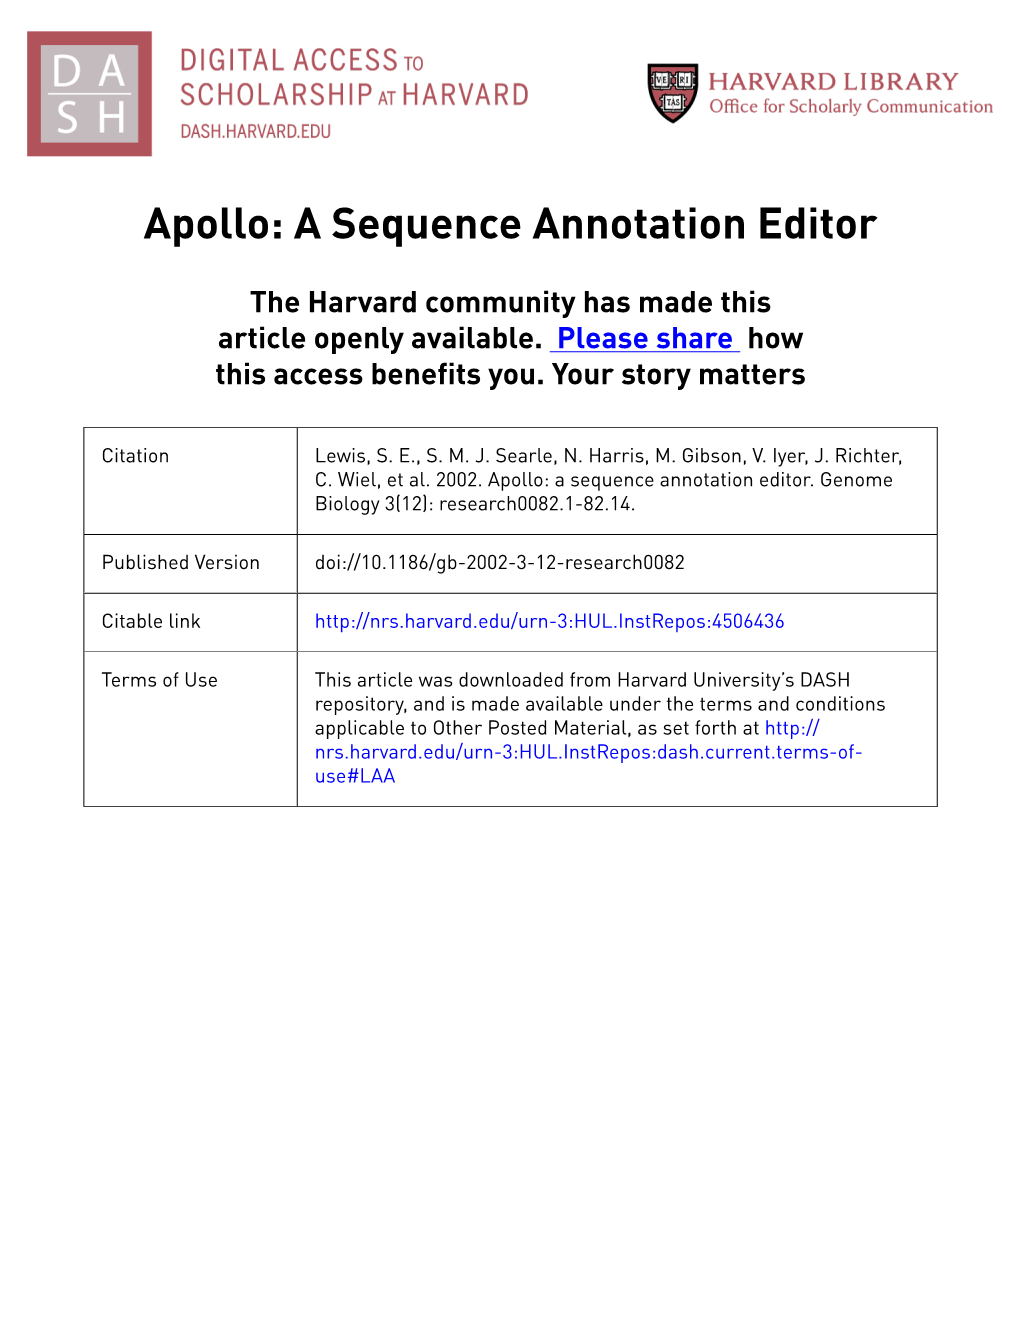 Apollo: a Sequence Annotation Editor